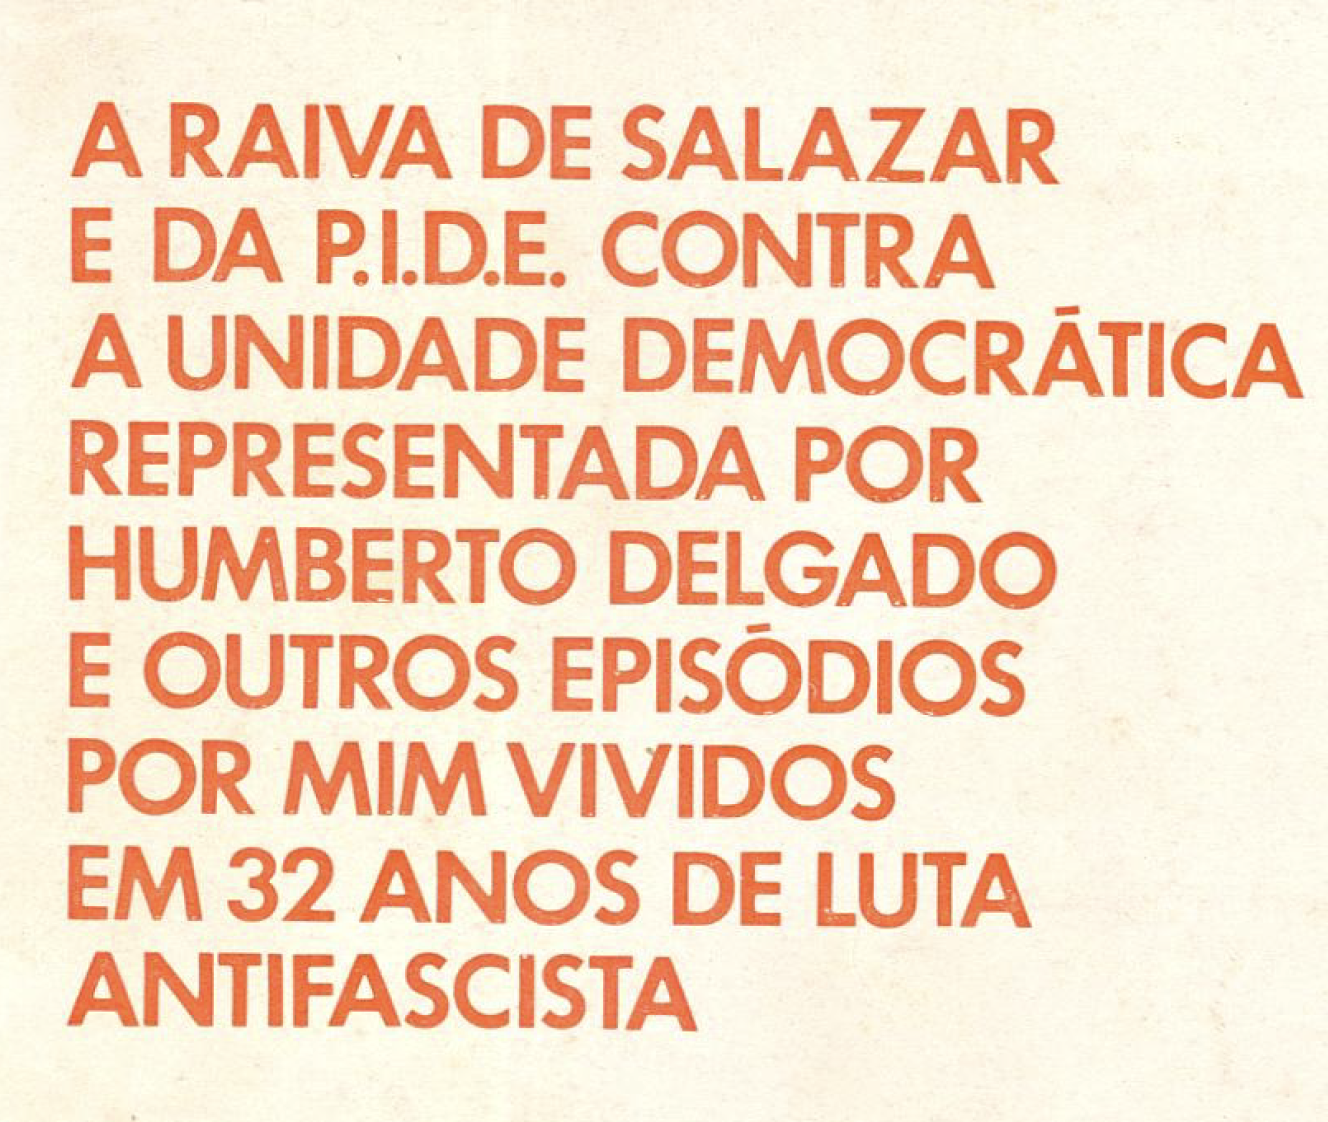 A raiva de Salazar e da PIDE contra a unidade democrática representada por Humberto Delgado e outros episódios por mim vividos em 32 anos de luta antifascista